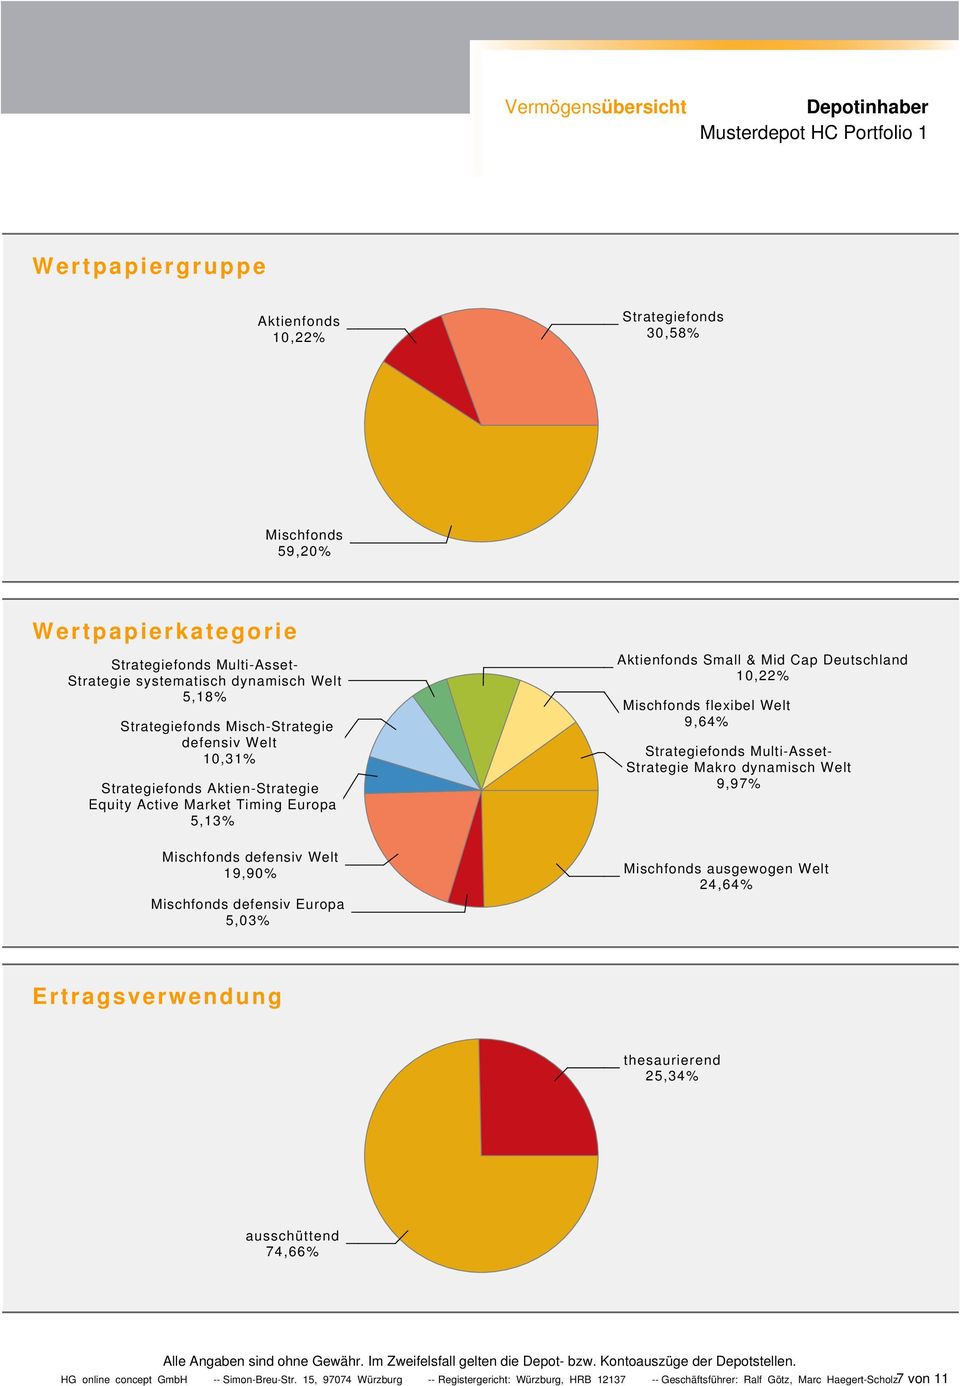 Aktienfonds Small & Mid Cap Deutschland 10,22% Mischfonds flexibel Welt 9,64% Strategiefonds MultiAsset Strategie Makro dynamisch Welt 9,97% Mischfonds ausgewogen Welt 24,64%